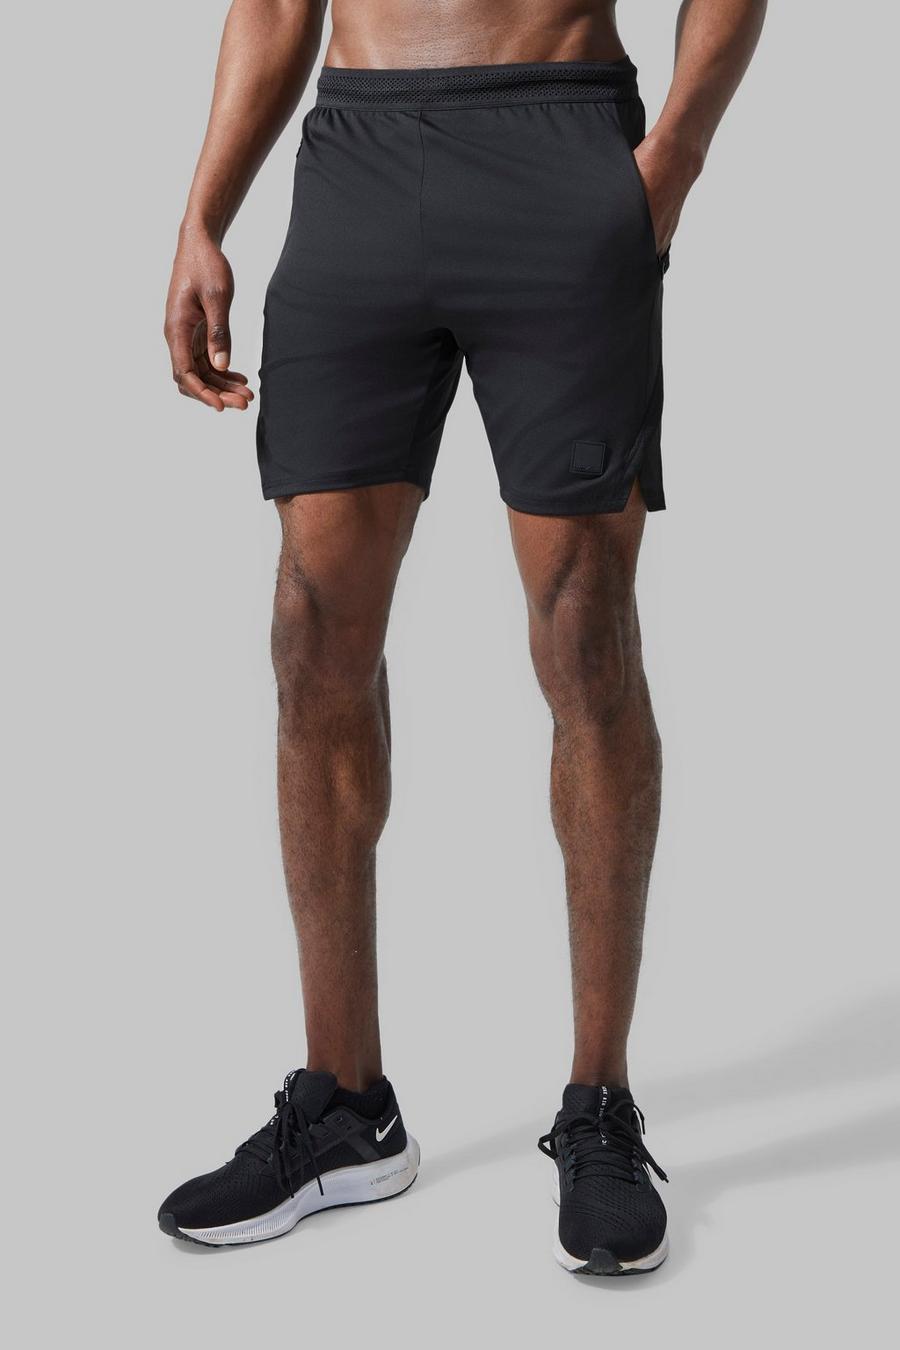 Pantaloncini Man Active per alta performance con spacco sul fondo, Black nero